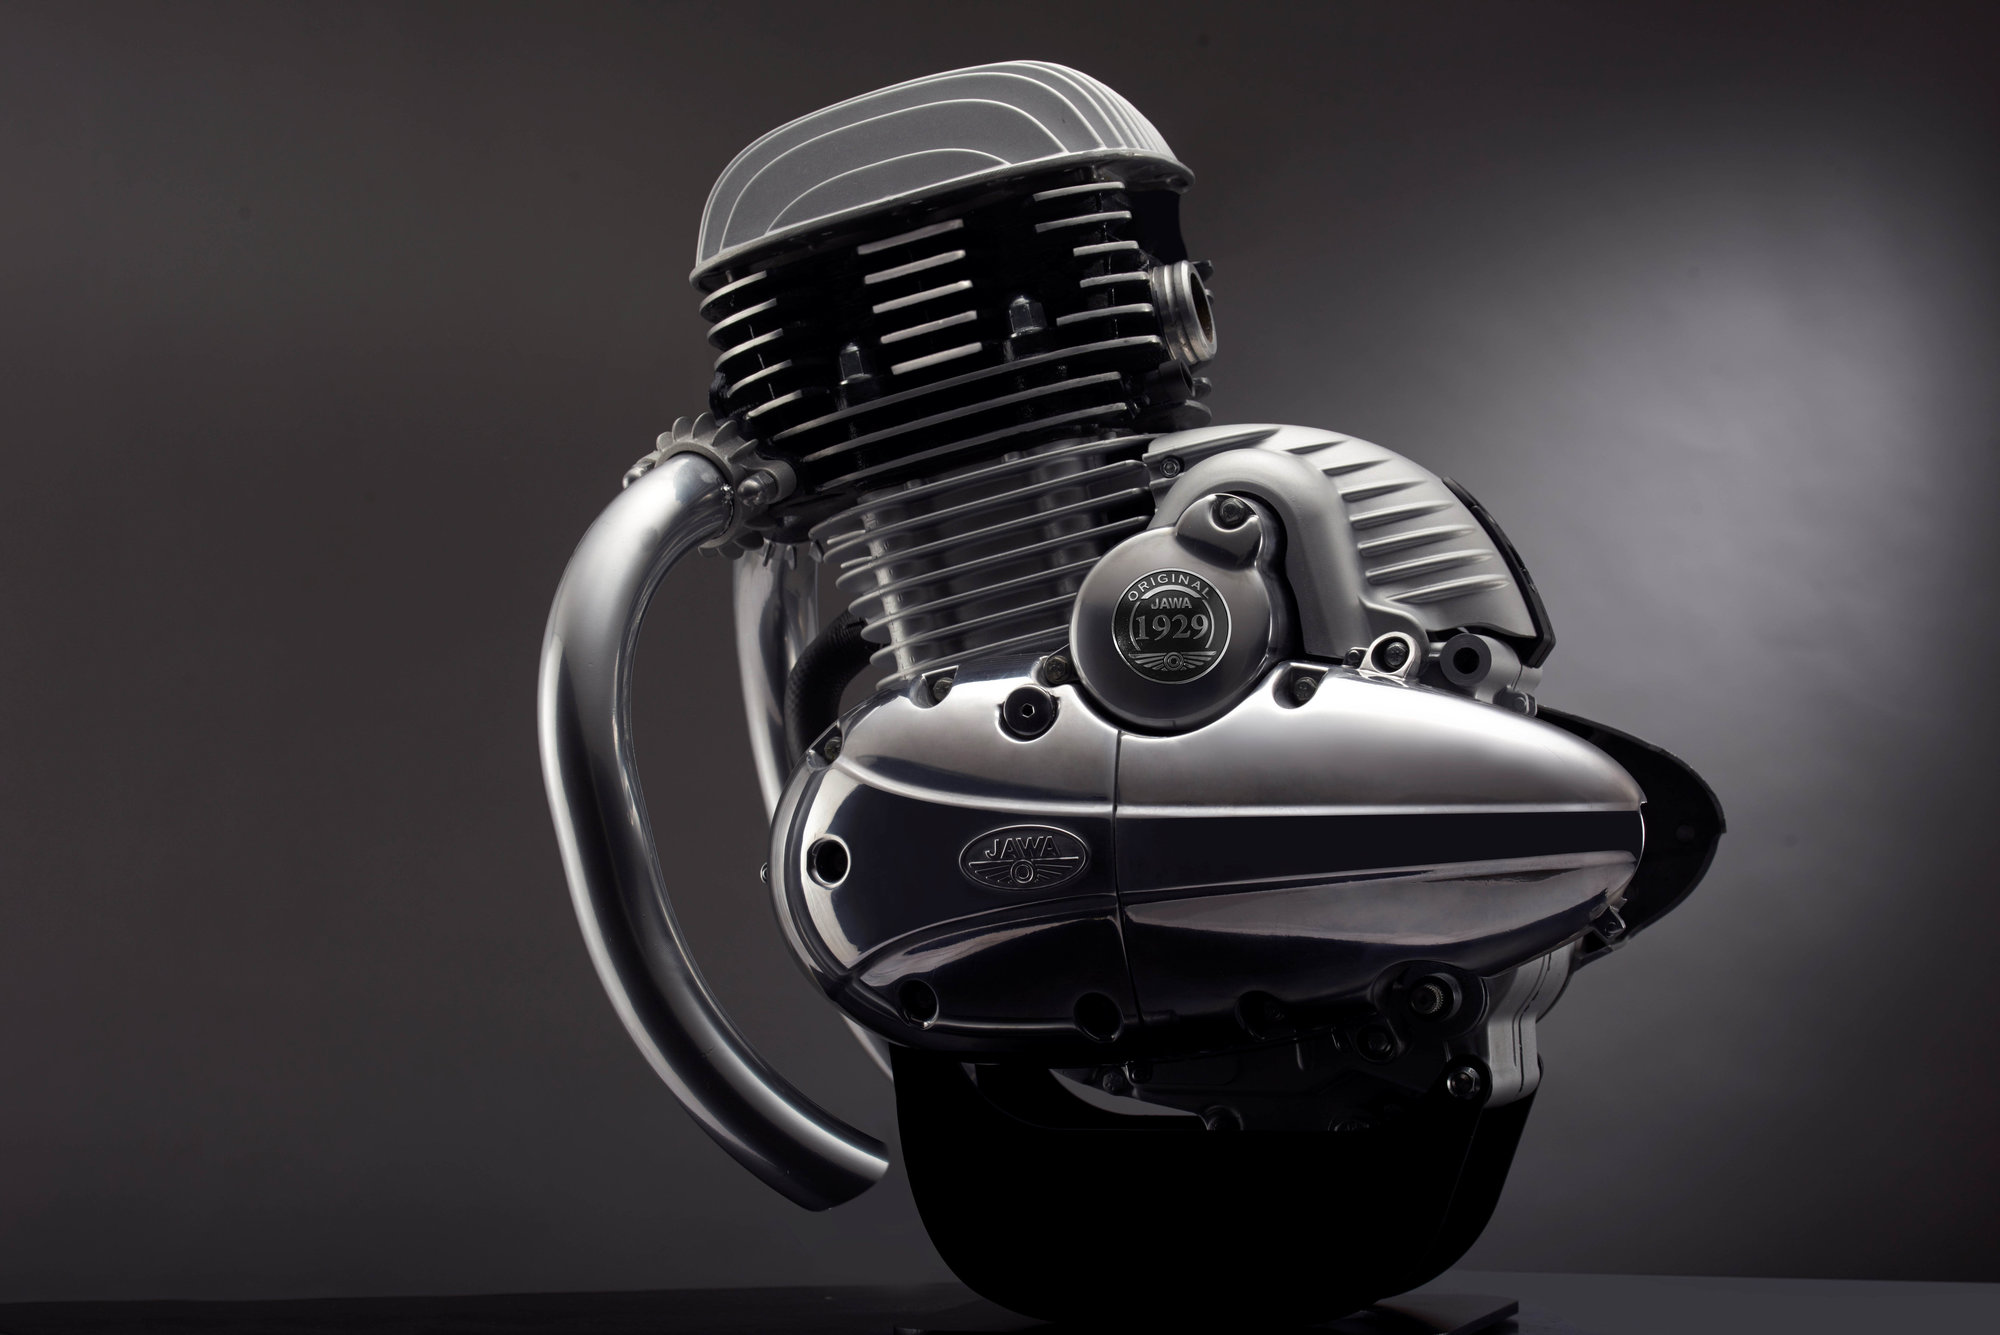 Nový motor připravený pro nové motocykly JAWA 300